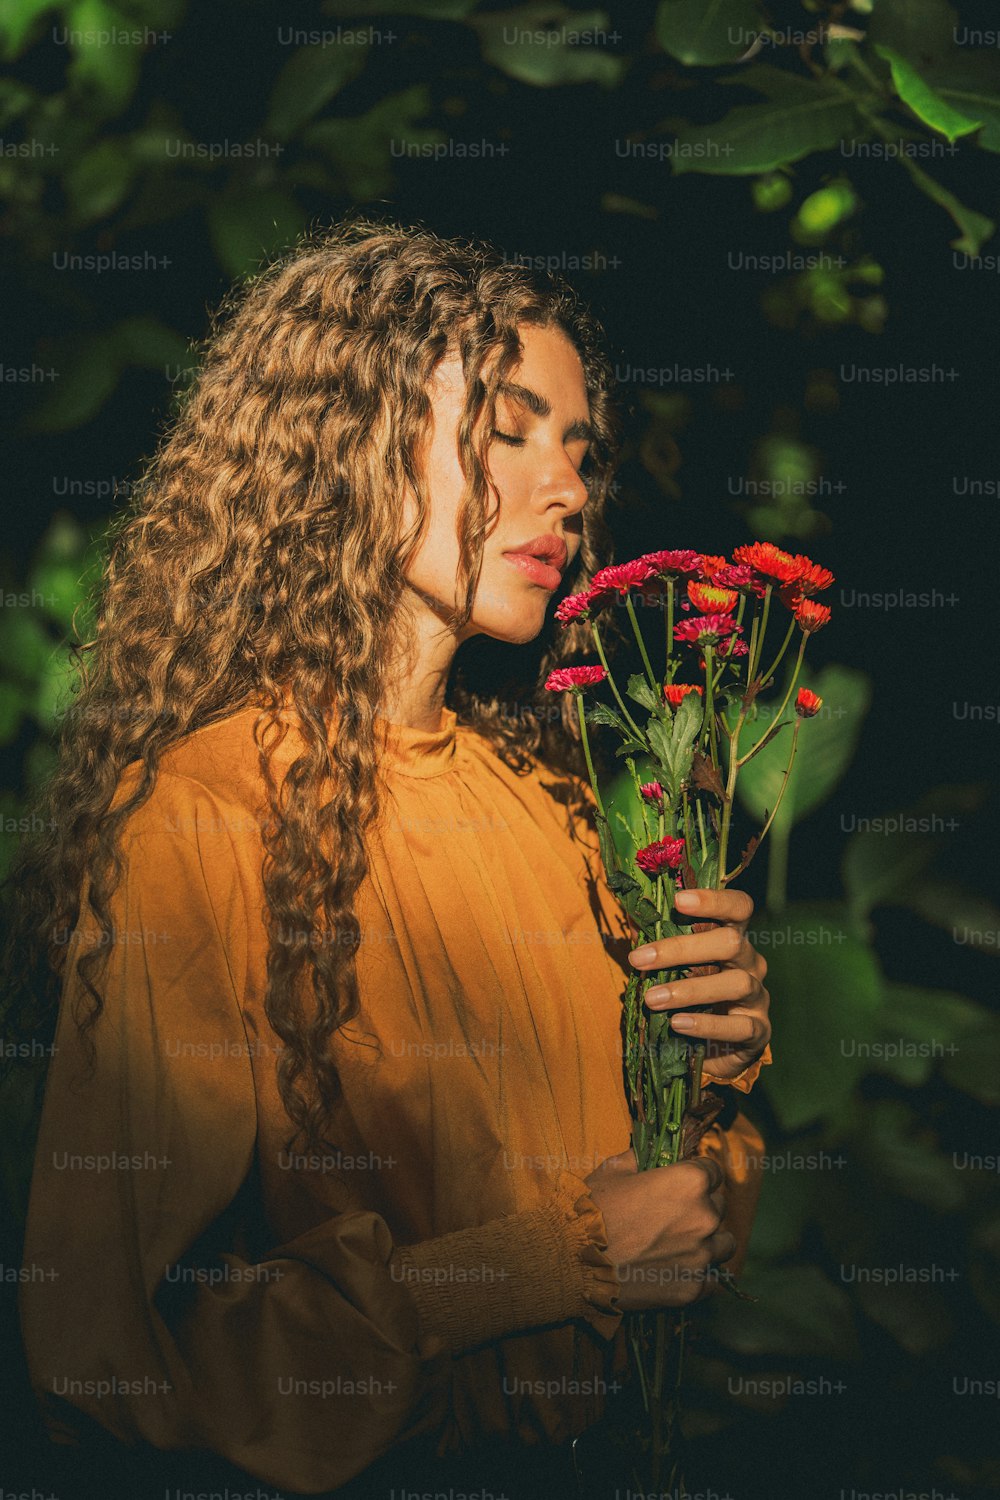 빨간 꽃 한 다발을 들고 있는 여자